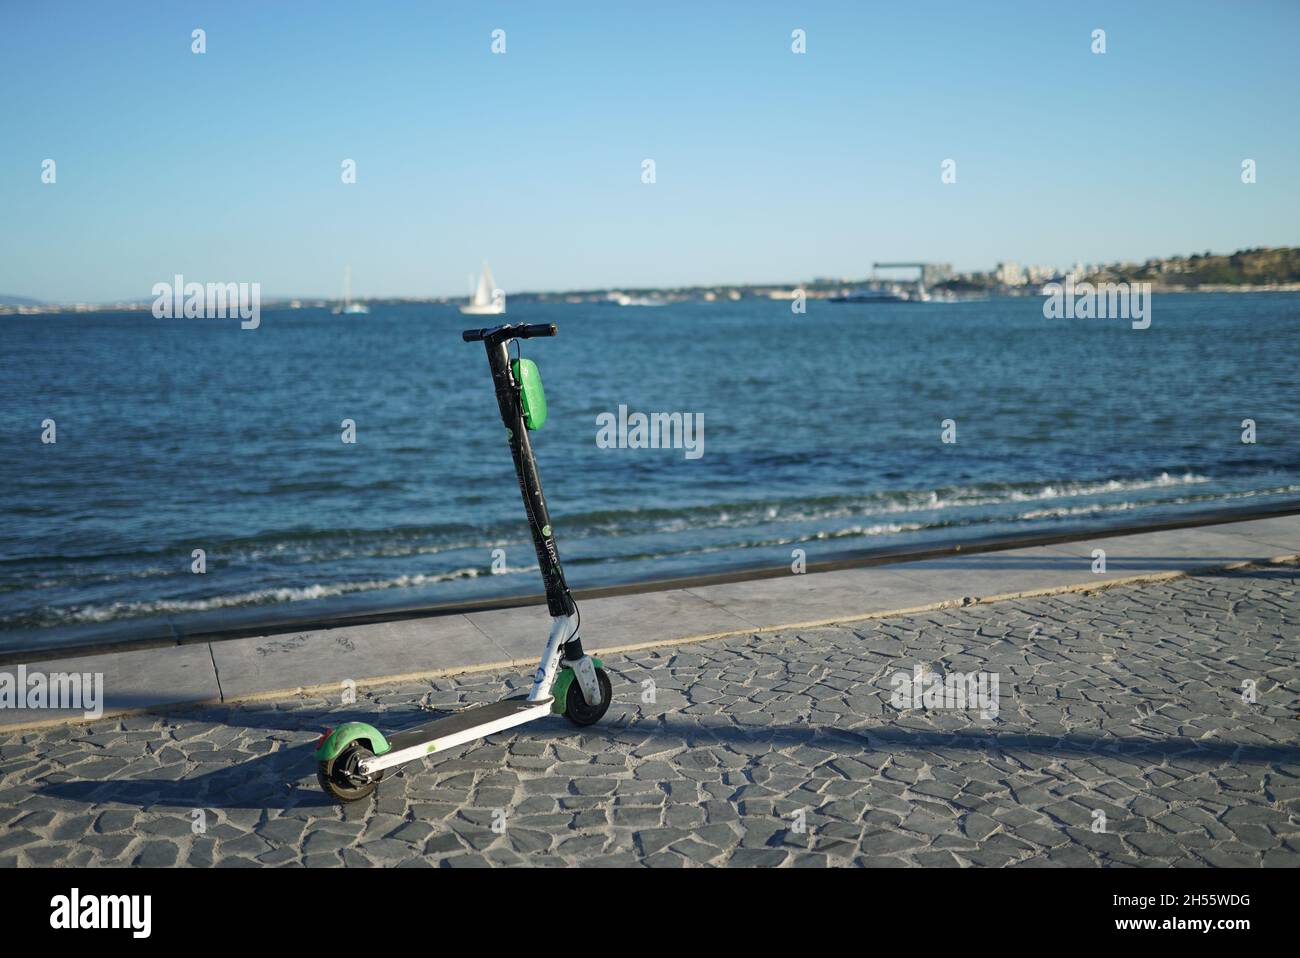 LISBONNE, PORTUGAL - 30 juillet 2021 : un scooter stationné à Ribeira das Naus, sur la baie du Tage, à Lisbonne, Portugal Banque D'Images